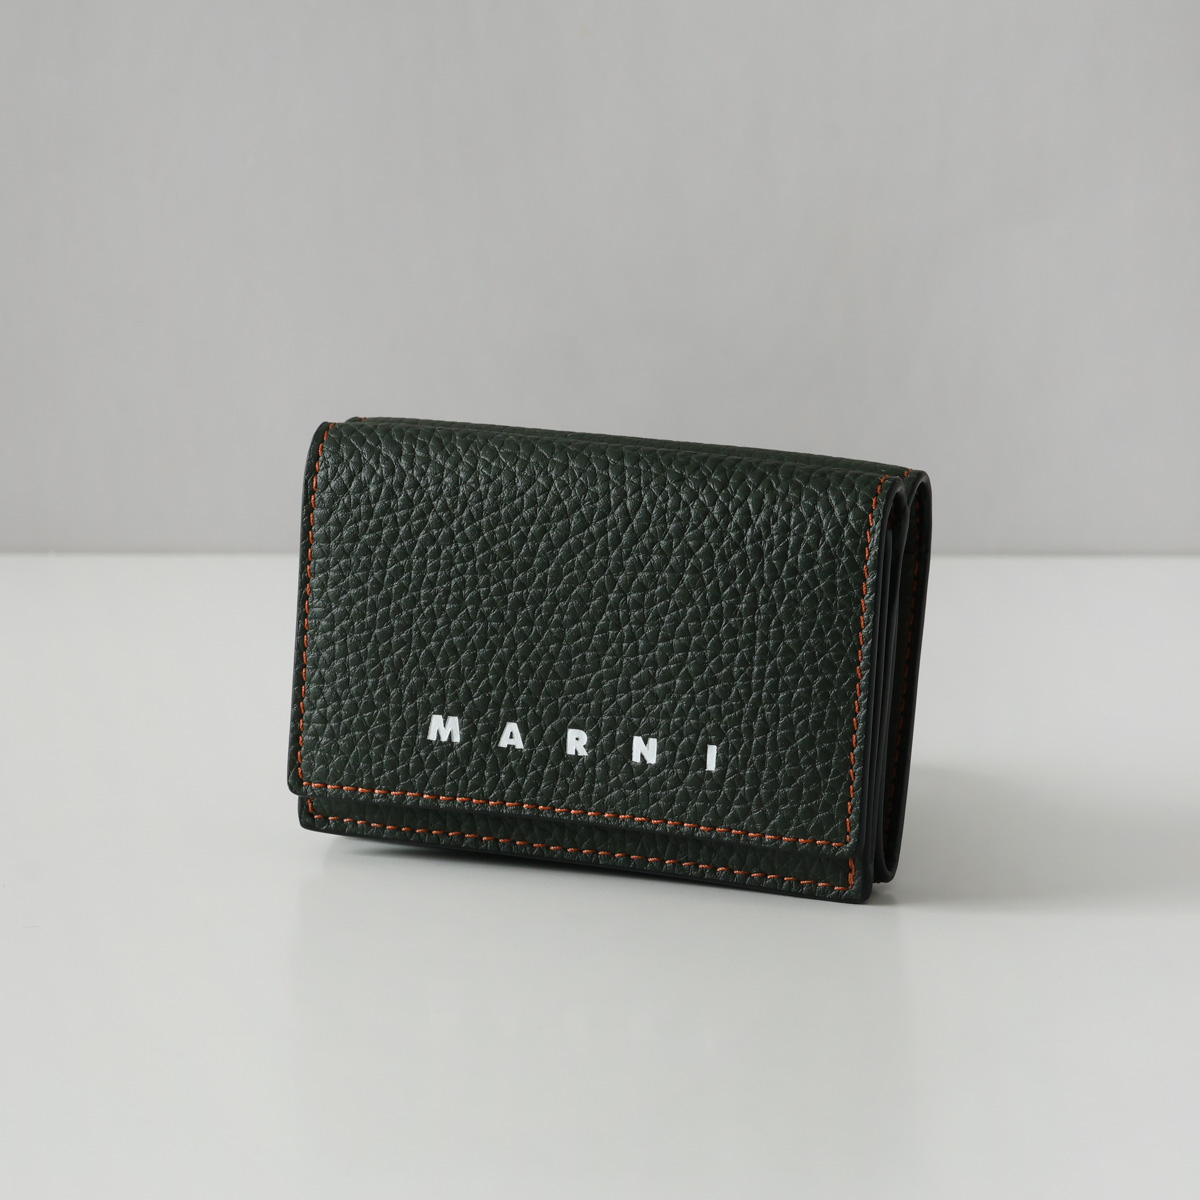 マルニ MARNI 3つ折財布 コインケース カードケース 小銭入れ おしゃれ 人気 PFMI0067U0 LV688